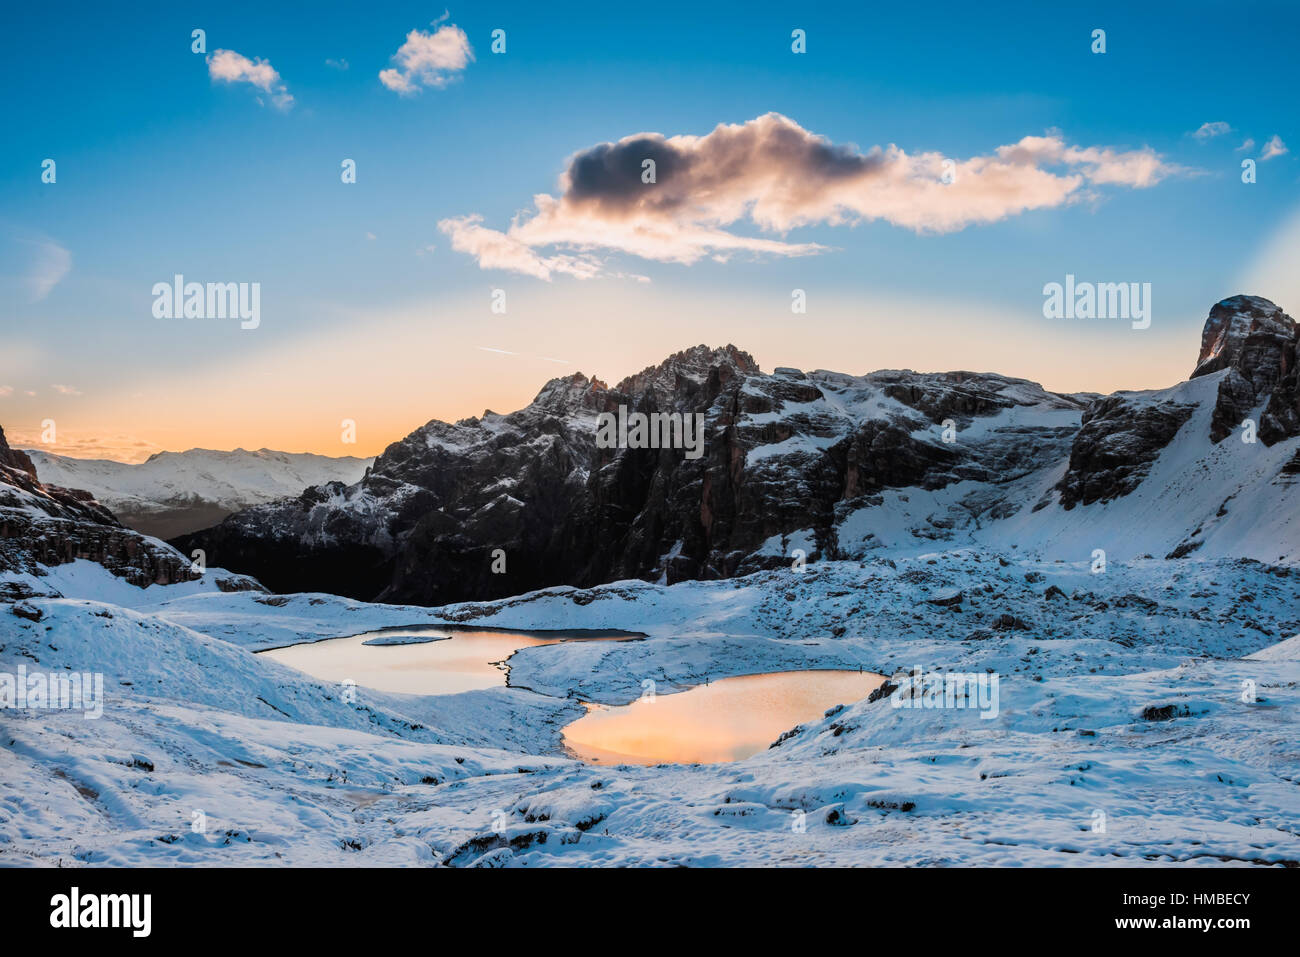 Neige et montagne lac Lago dei piani près de Drei Zinnen ou la cime, Italie Alpes Dolomites Banque D'Images